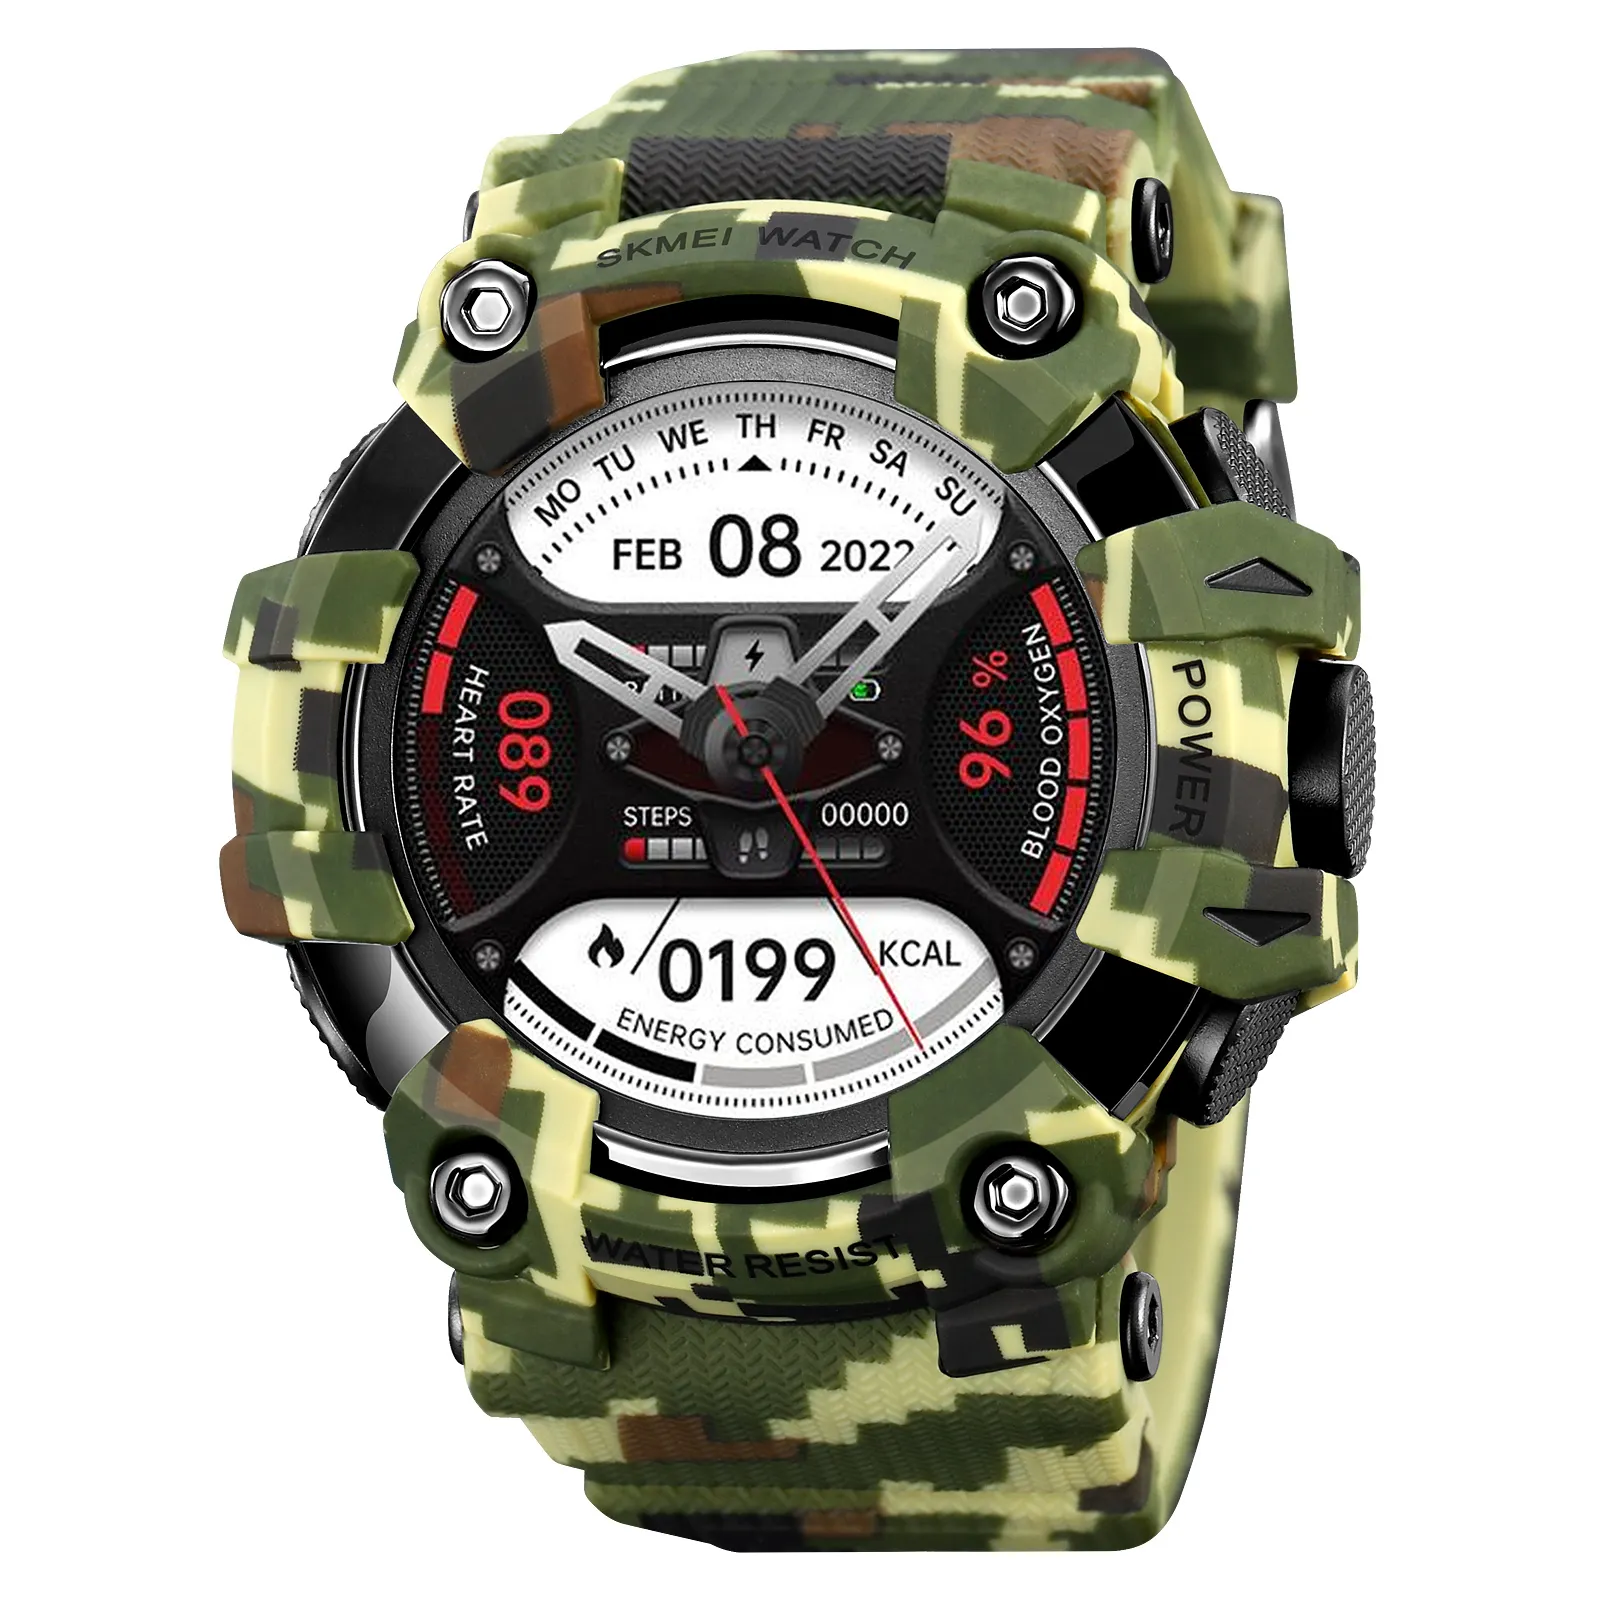 SKMEI S231 hombre de reloj intelligent smartwatch health fitness tracker sport watches swimming waterproof men smart watch